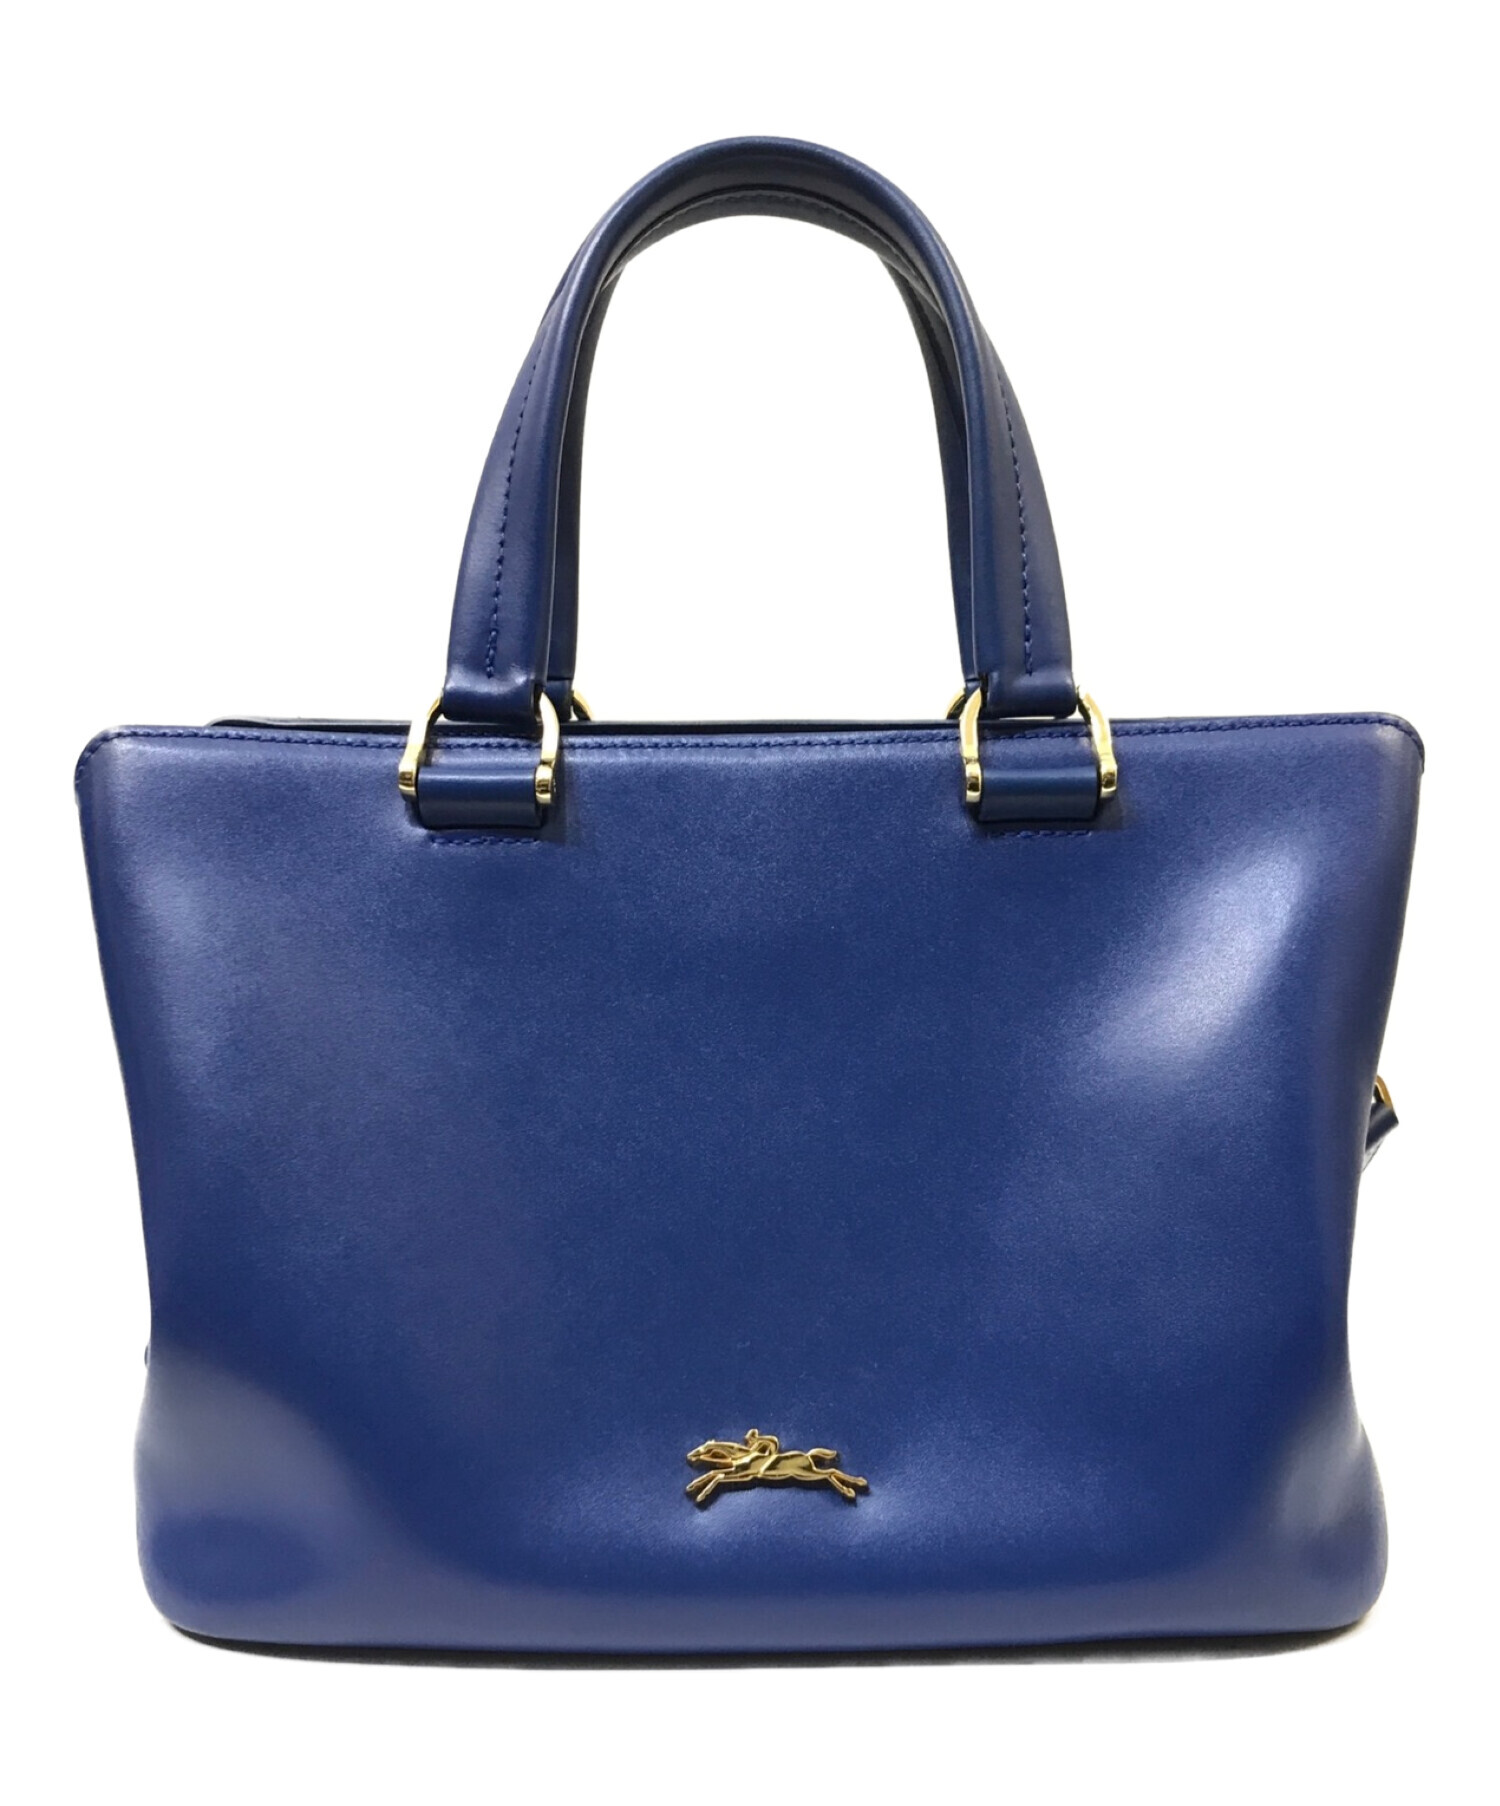 ロンシャン／Longchamp バッグ ハンドバッグ 鞄 トートバッグ レディース 女性 女性用レザー 革 本革 ブルー 青  HONORE オノレ404 2WAY ショルダーバッグ